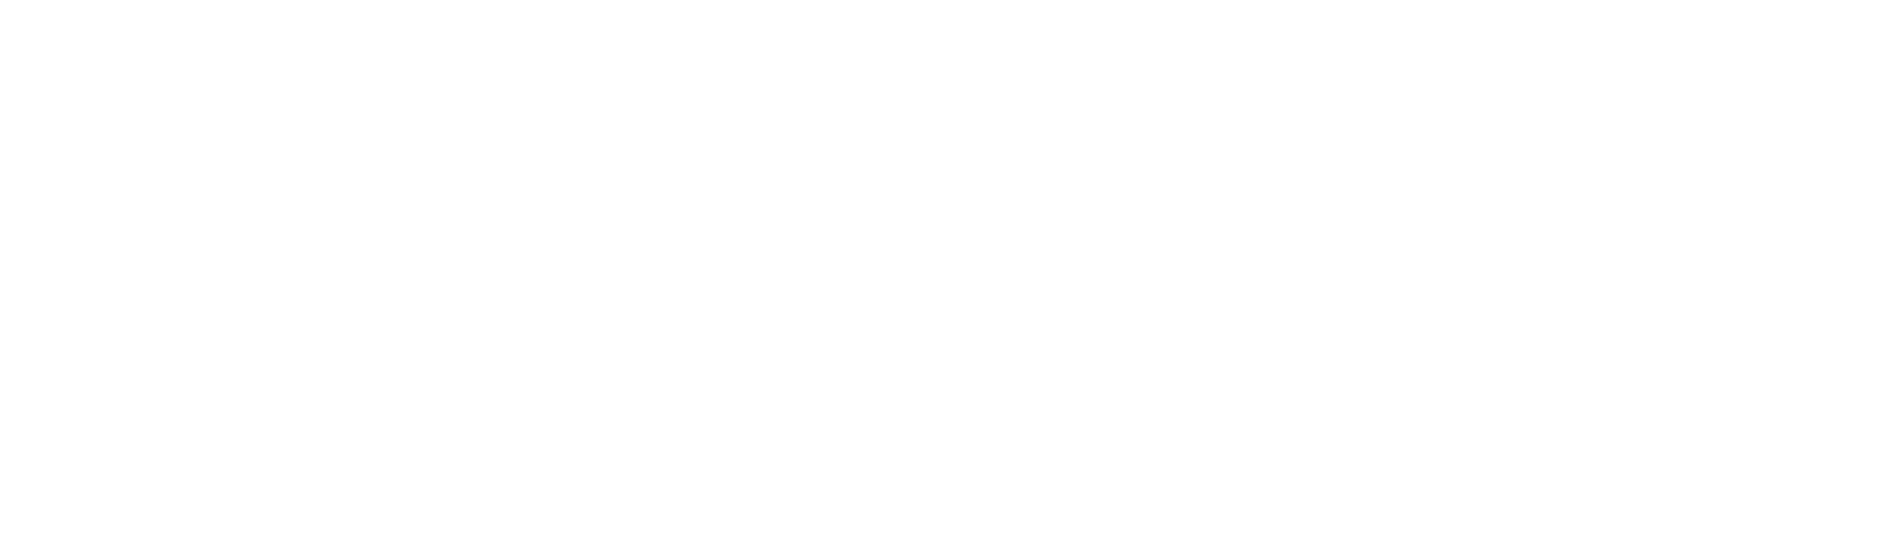 De Sutter Electronics DSE